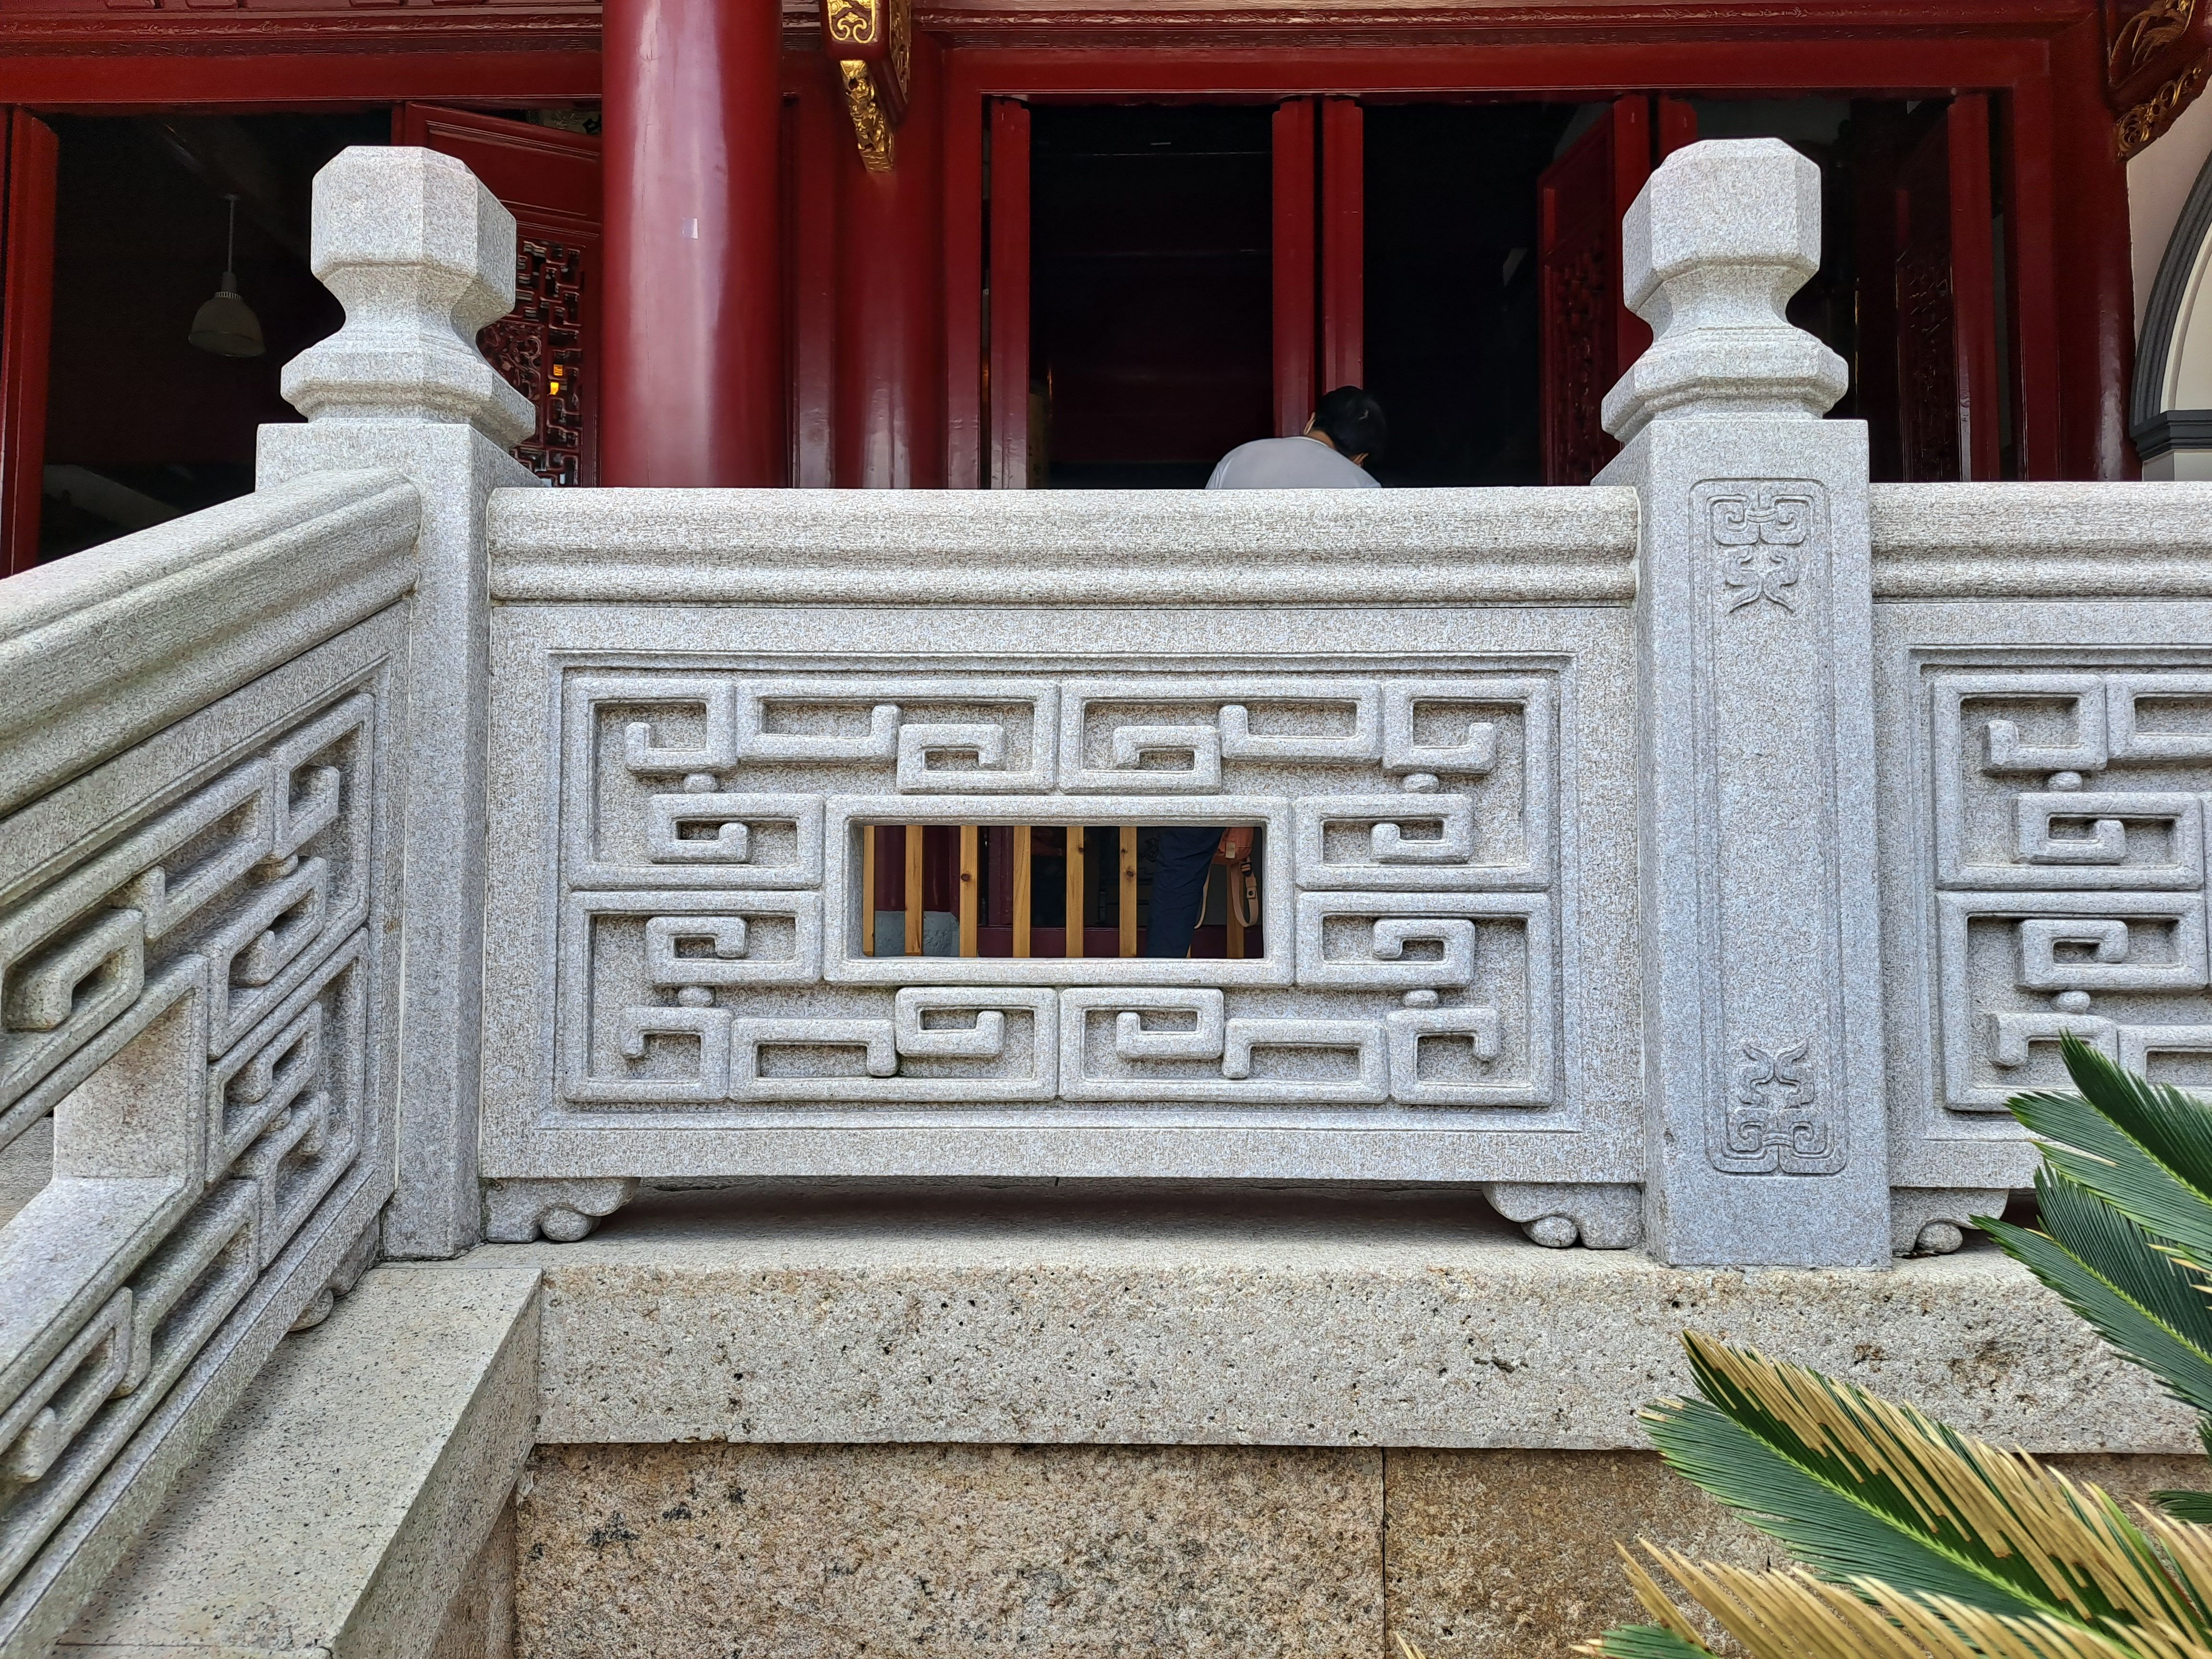 配置等方面存在较大差异,但两者都是中国古代建筑文化中重要的构件